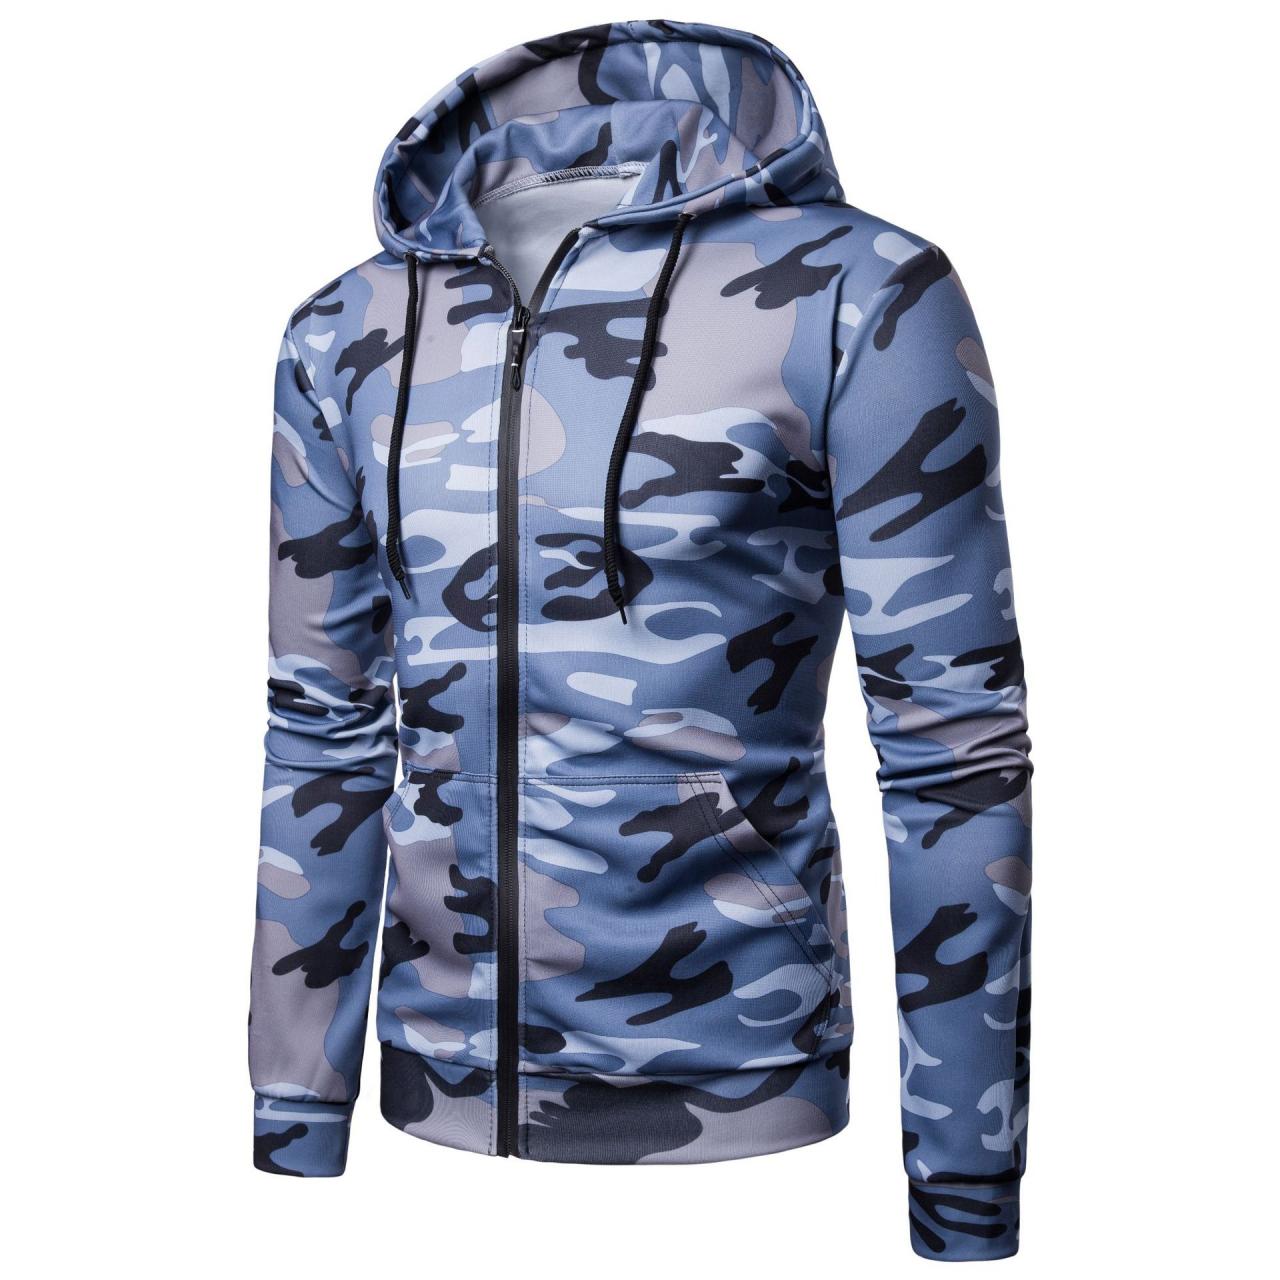 Men Camouflage Coat Spring Autumn Thin Slim Long Sleeve Zipper Hooded Jacket Windbreaker Outwear blue